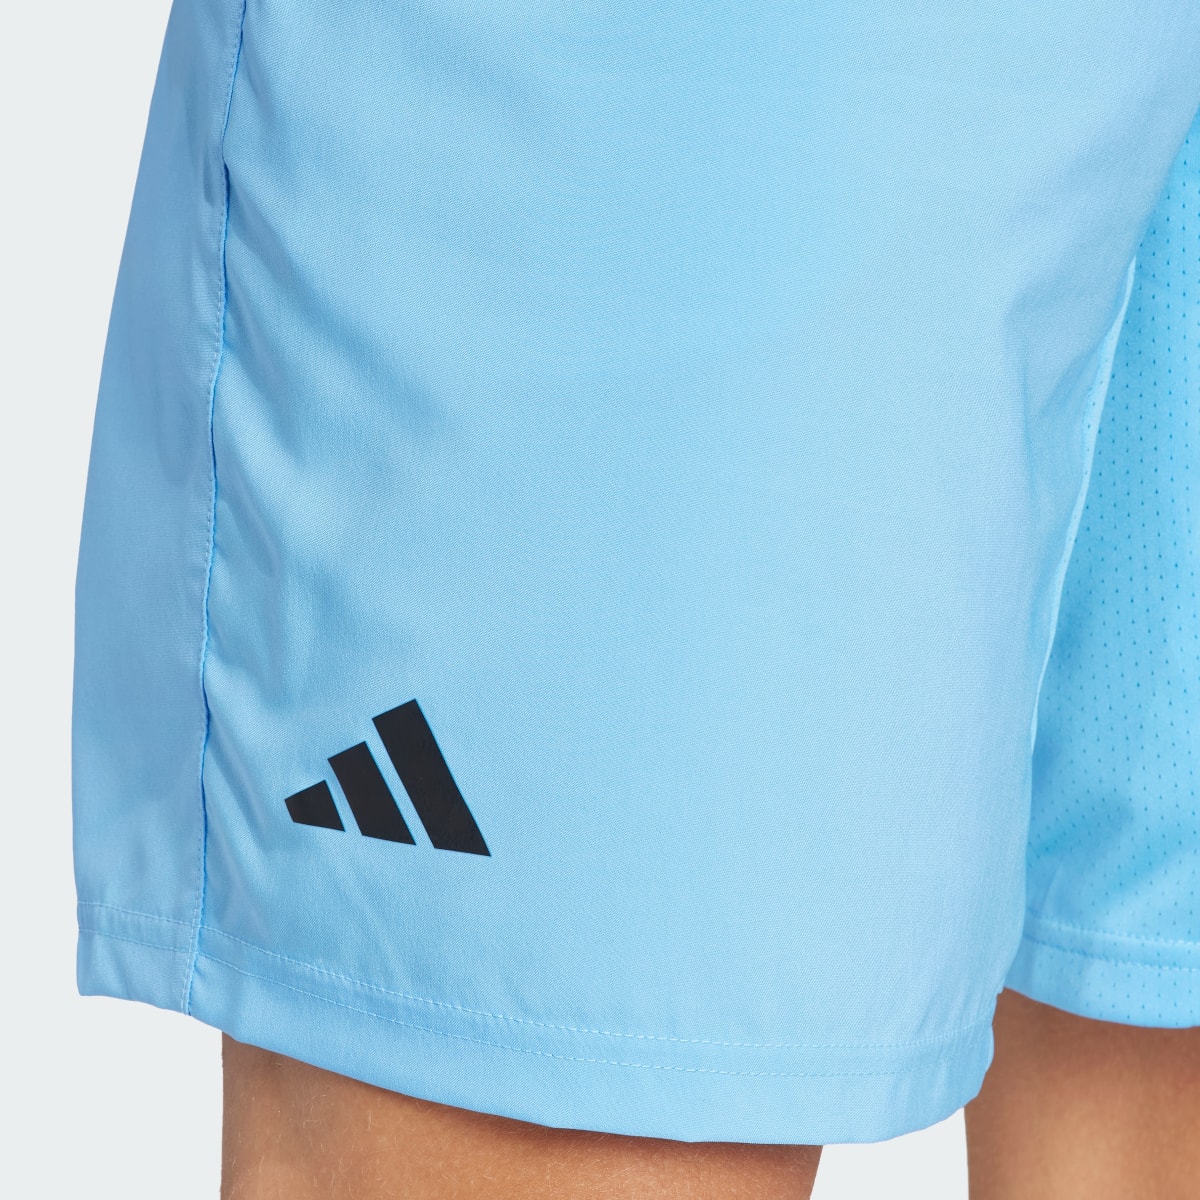 Adidas Club 3-Stripes Tennis Shorts. 5